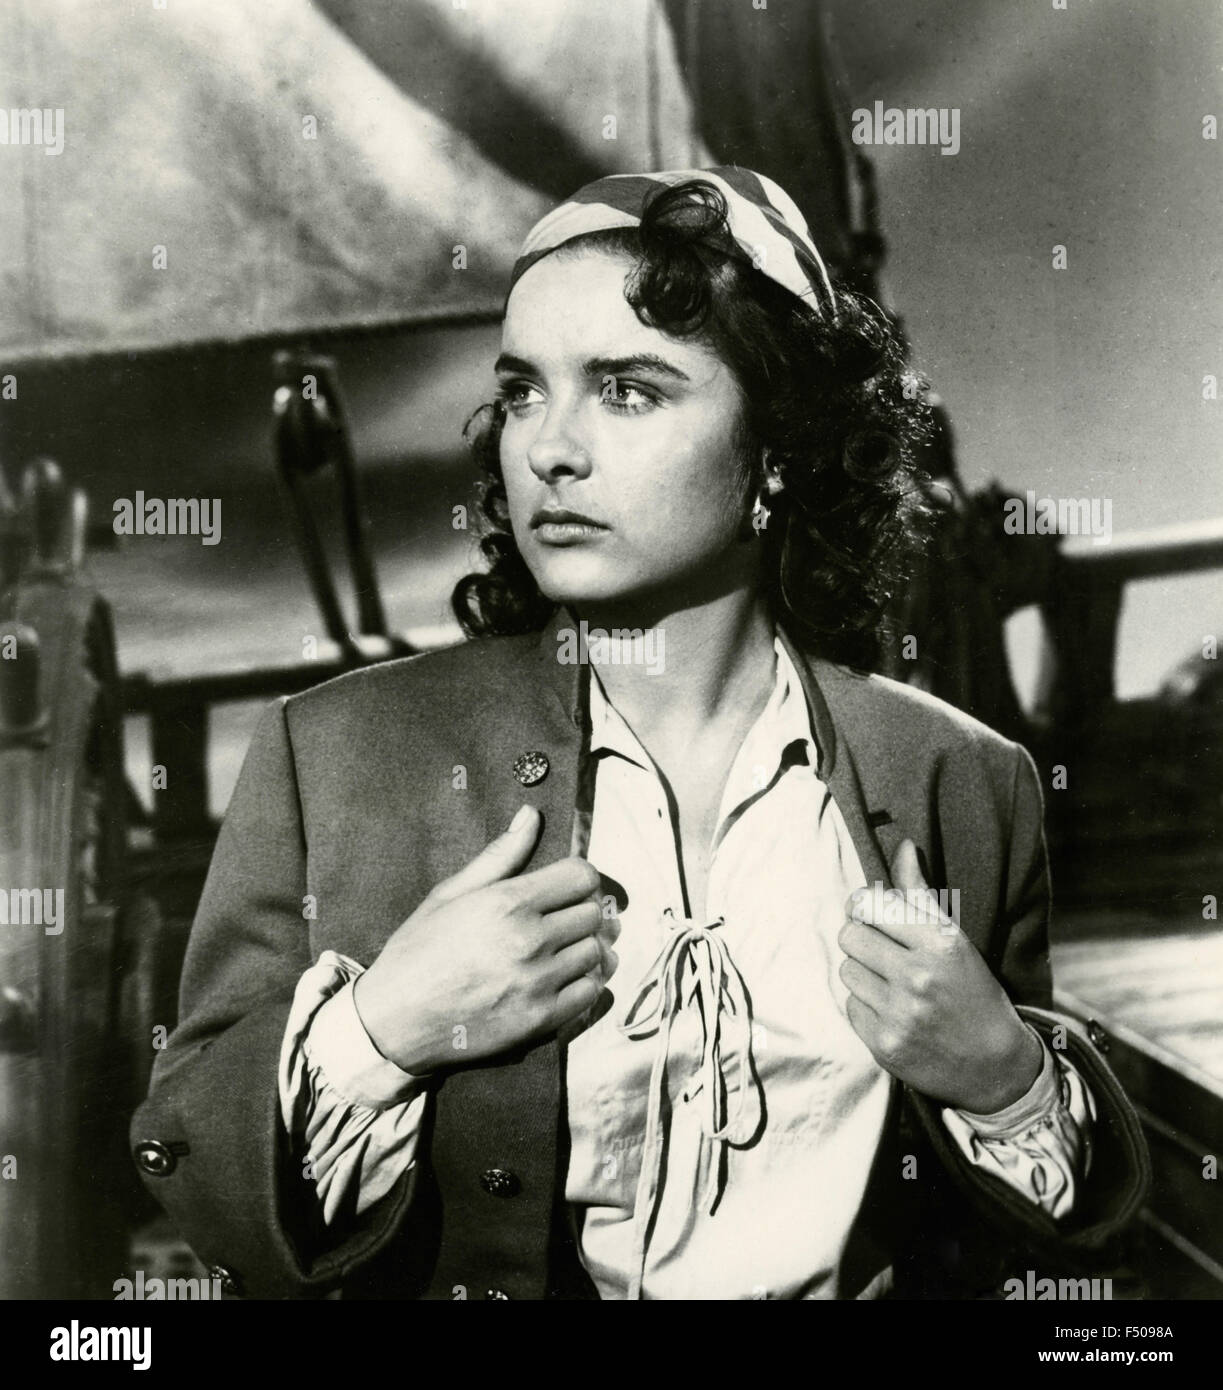 L'actrice Jean Peters dans une scène du film "Anne des Indes', USA 1951 Banque D'Images